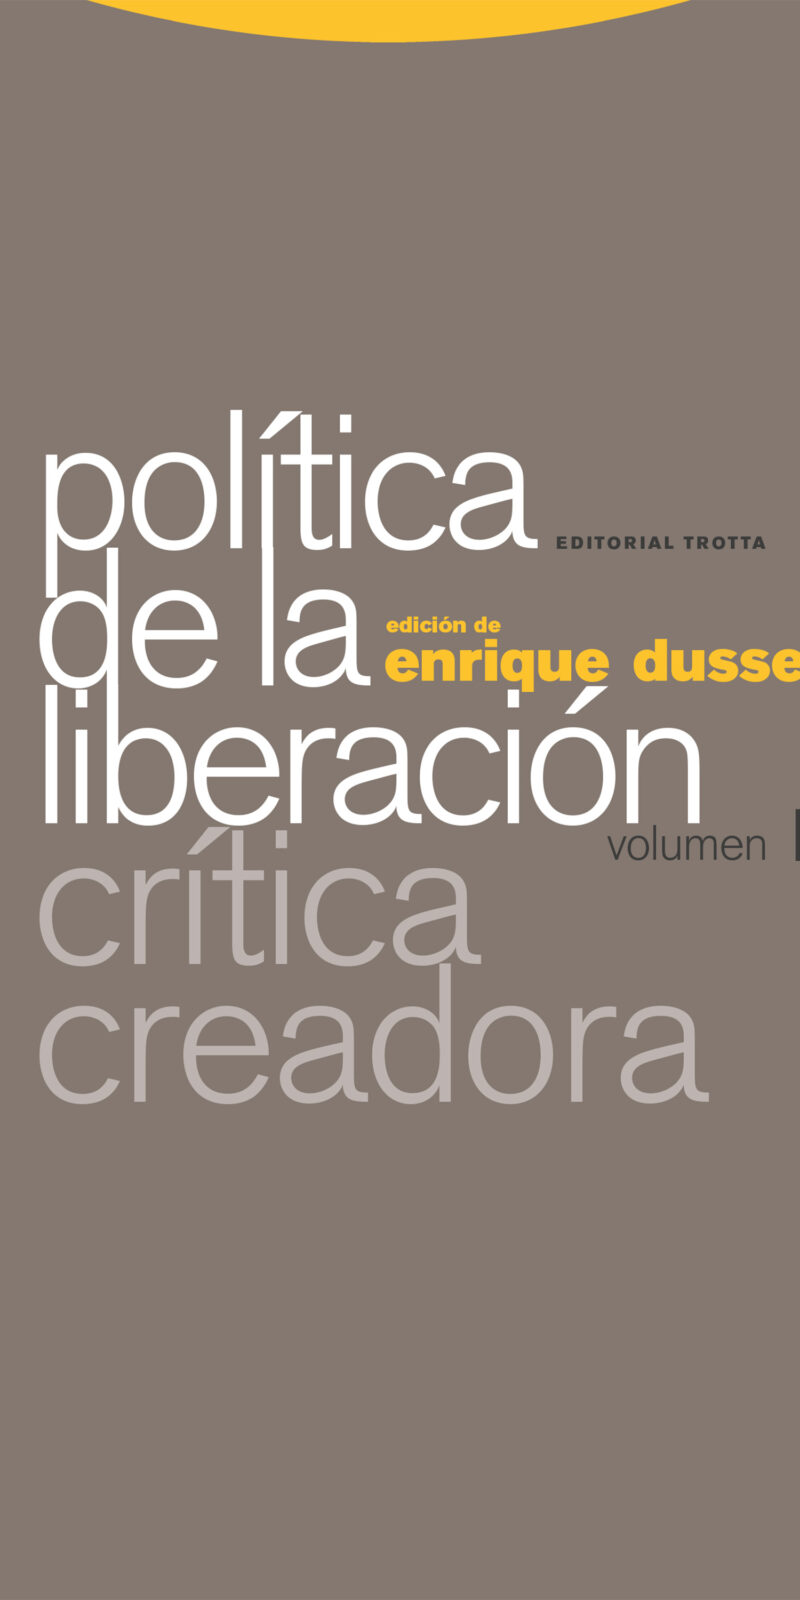 Política Liberación Crítica creadora - ENRIQUE DUSSELL -9788498798432